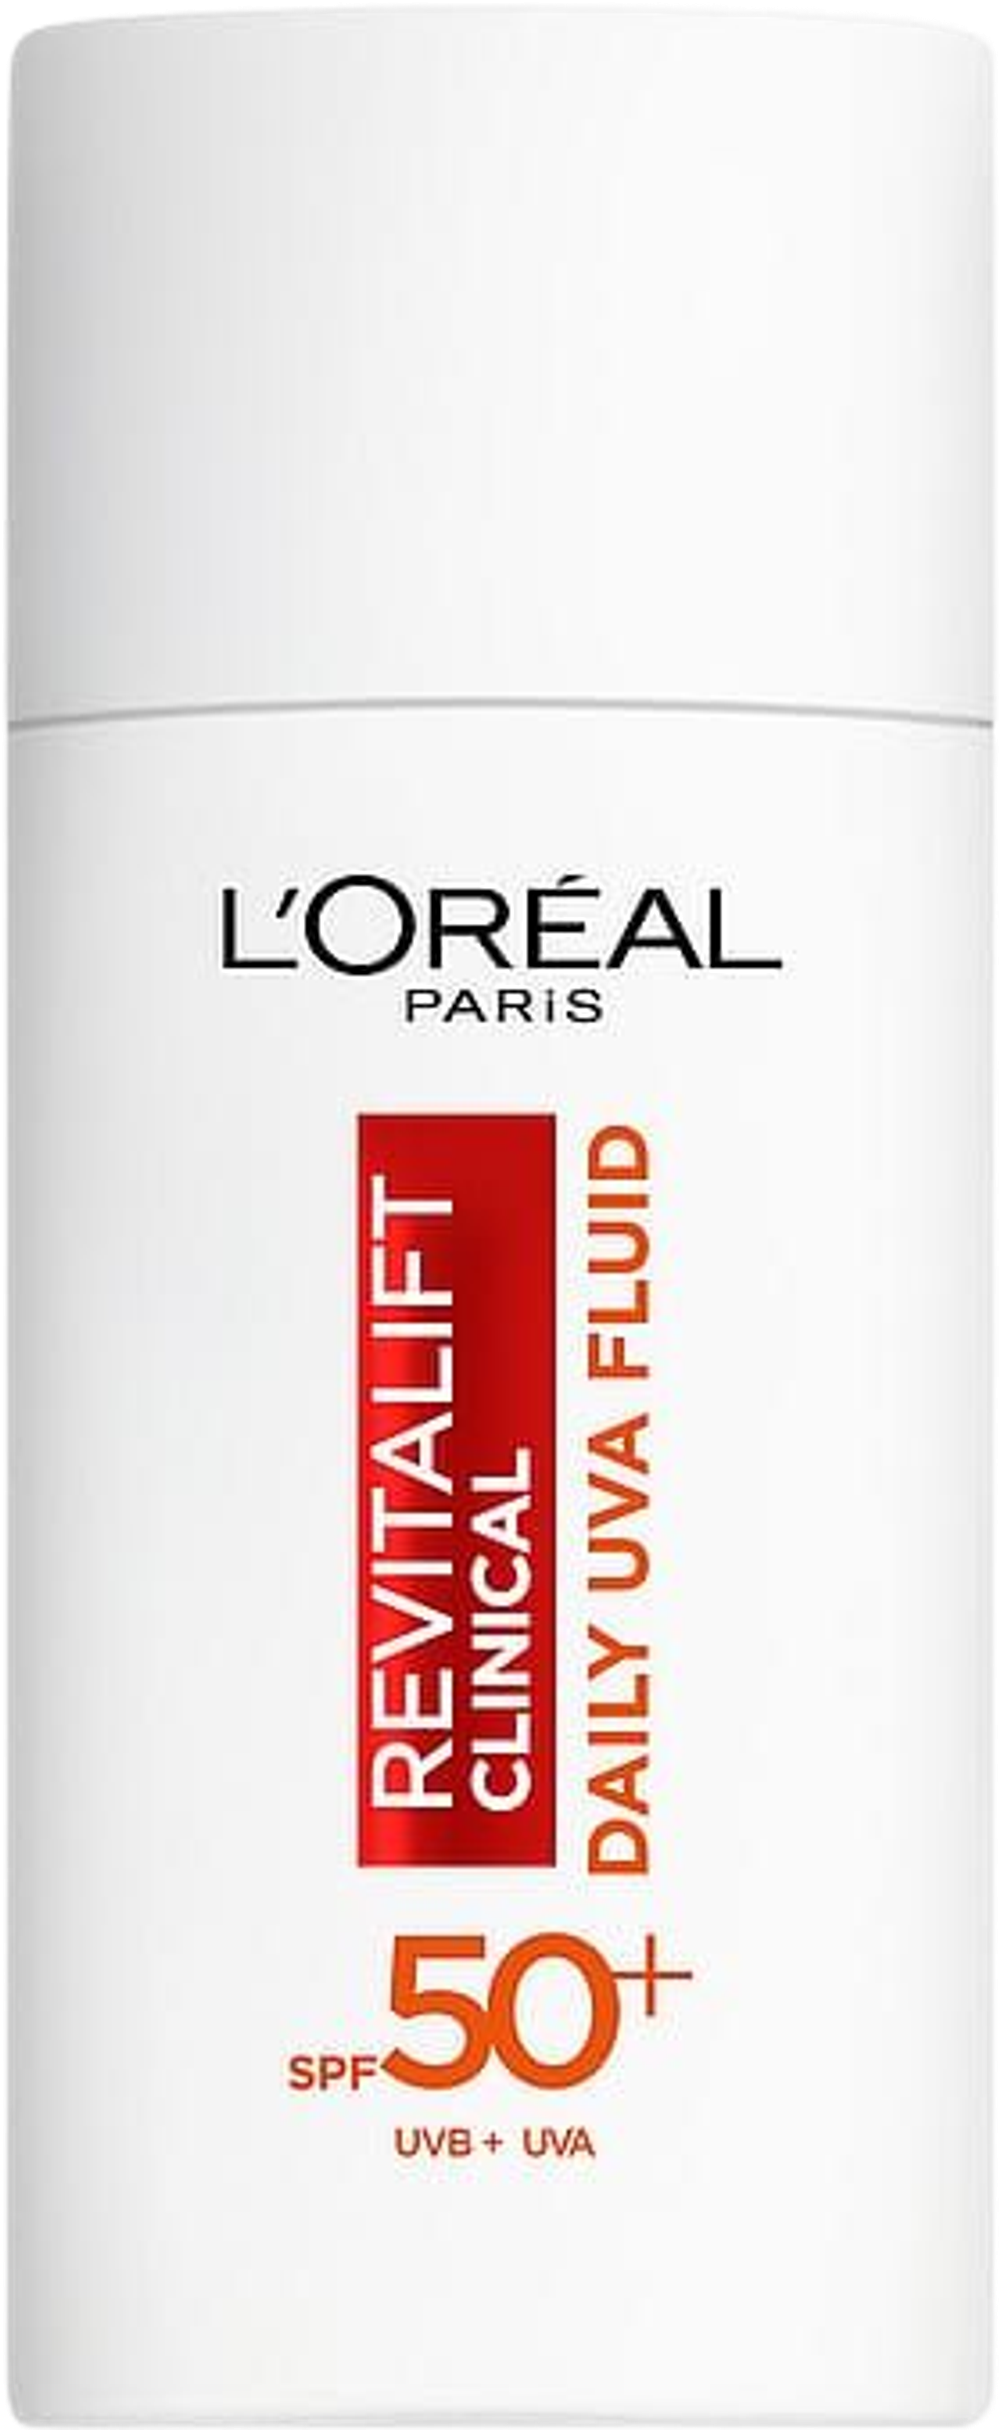 Tilbud på Alt Loréal Paris hudpleje (L'Oréal Paris) fra Matas til 191,96 kr.